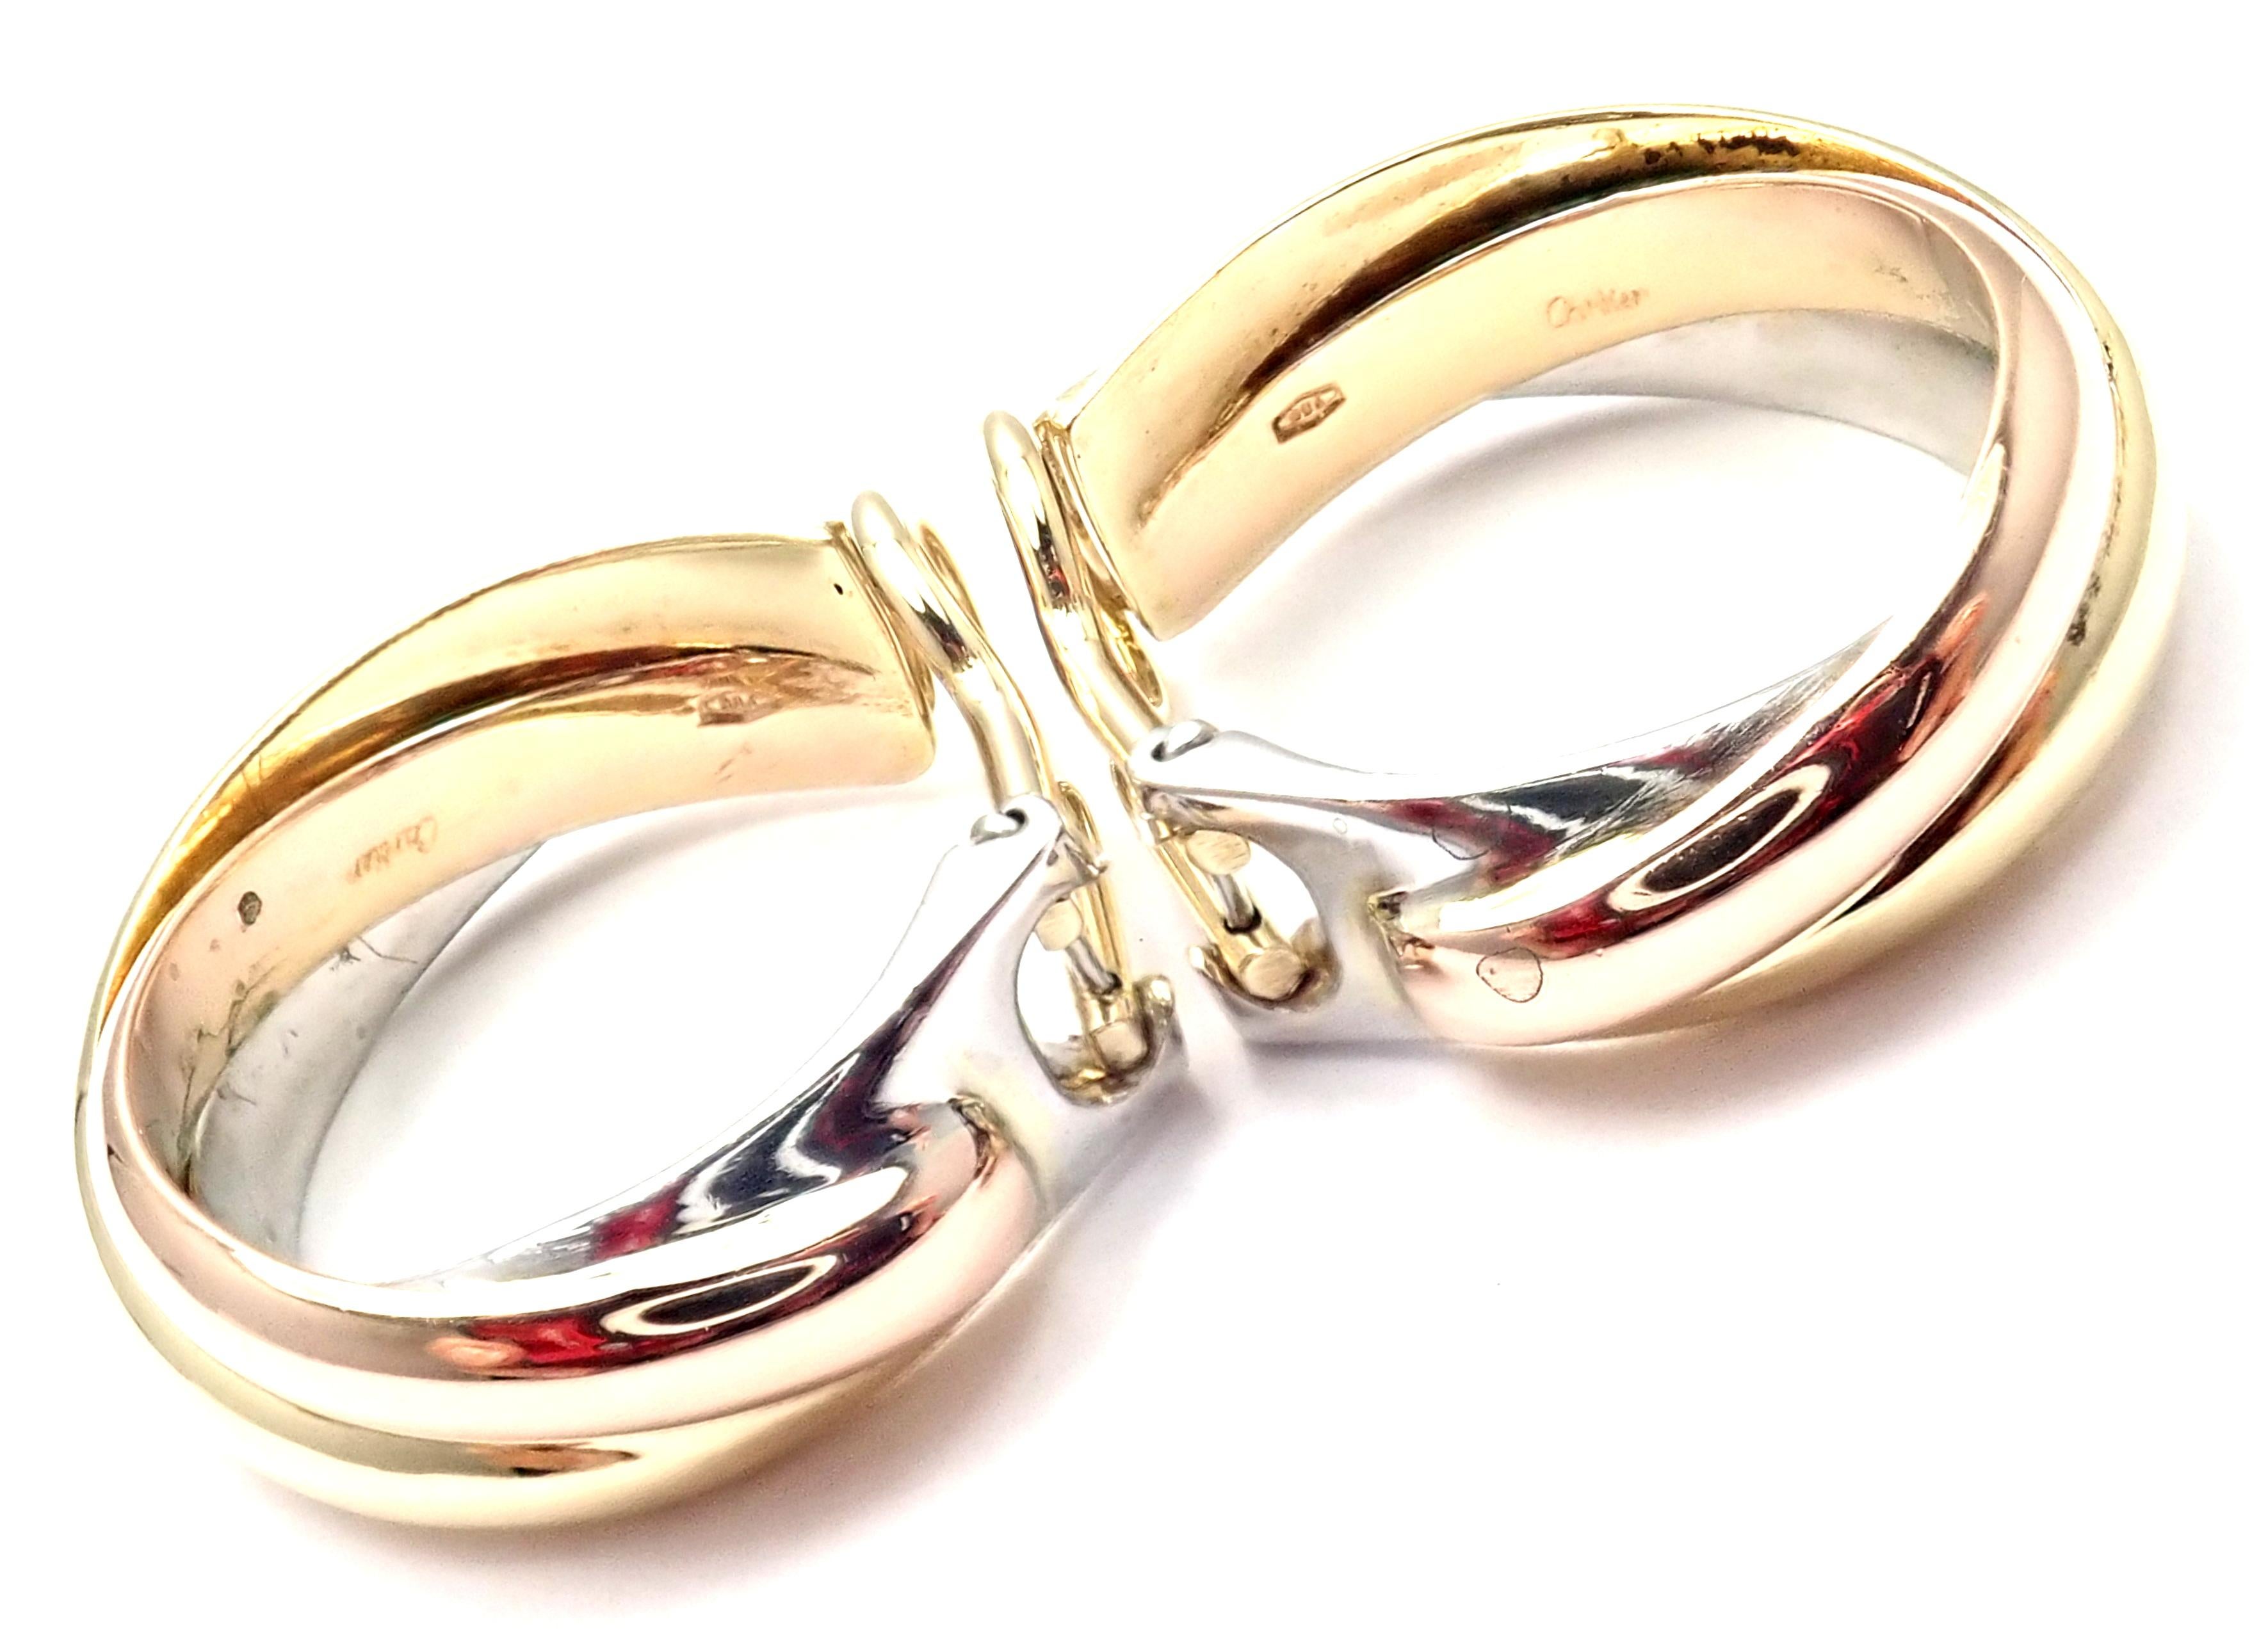 18k Tri-Color (Gelb, Weiß, Rose) Gold Medium Size Trinity Hoop Earrings von Cartier. 
Diese Ohrringe sind für nicht gepiercte Ohren, können aber durch Hinzufügen von Stiften umfunktioniert werden.
Einzelheiten: 
Abmessungen: 24mm x 22mm x